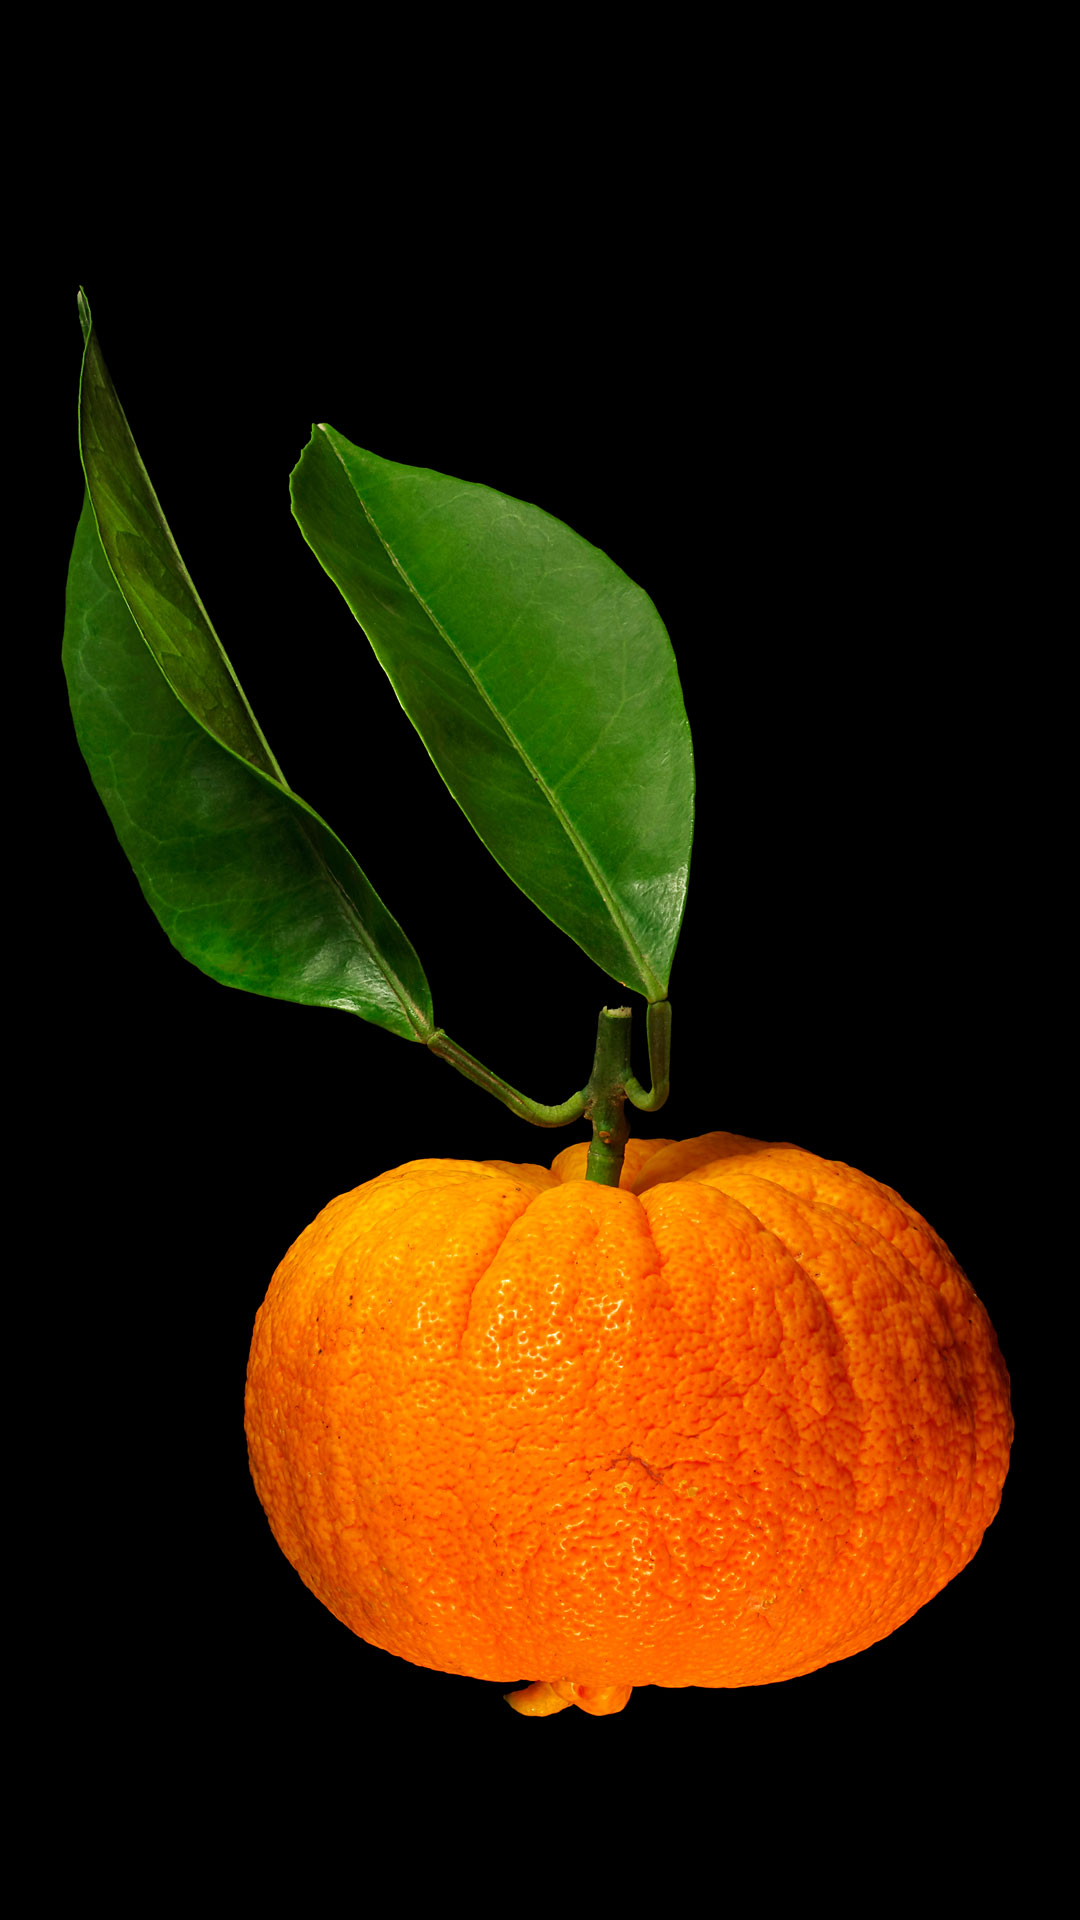 Childing orange: Citrus × aurantium ‘Foetifera’